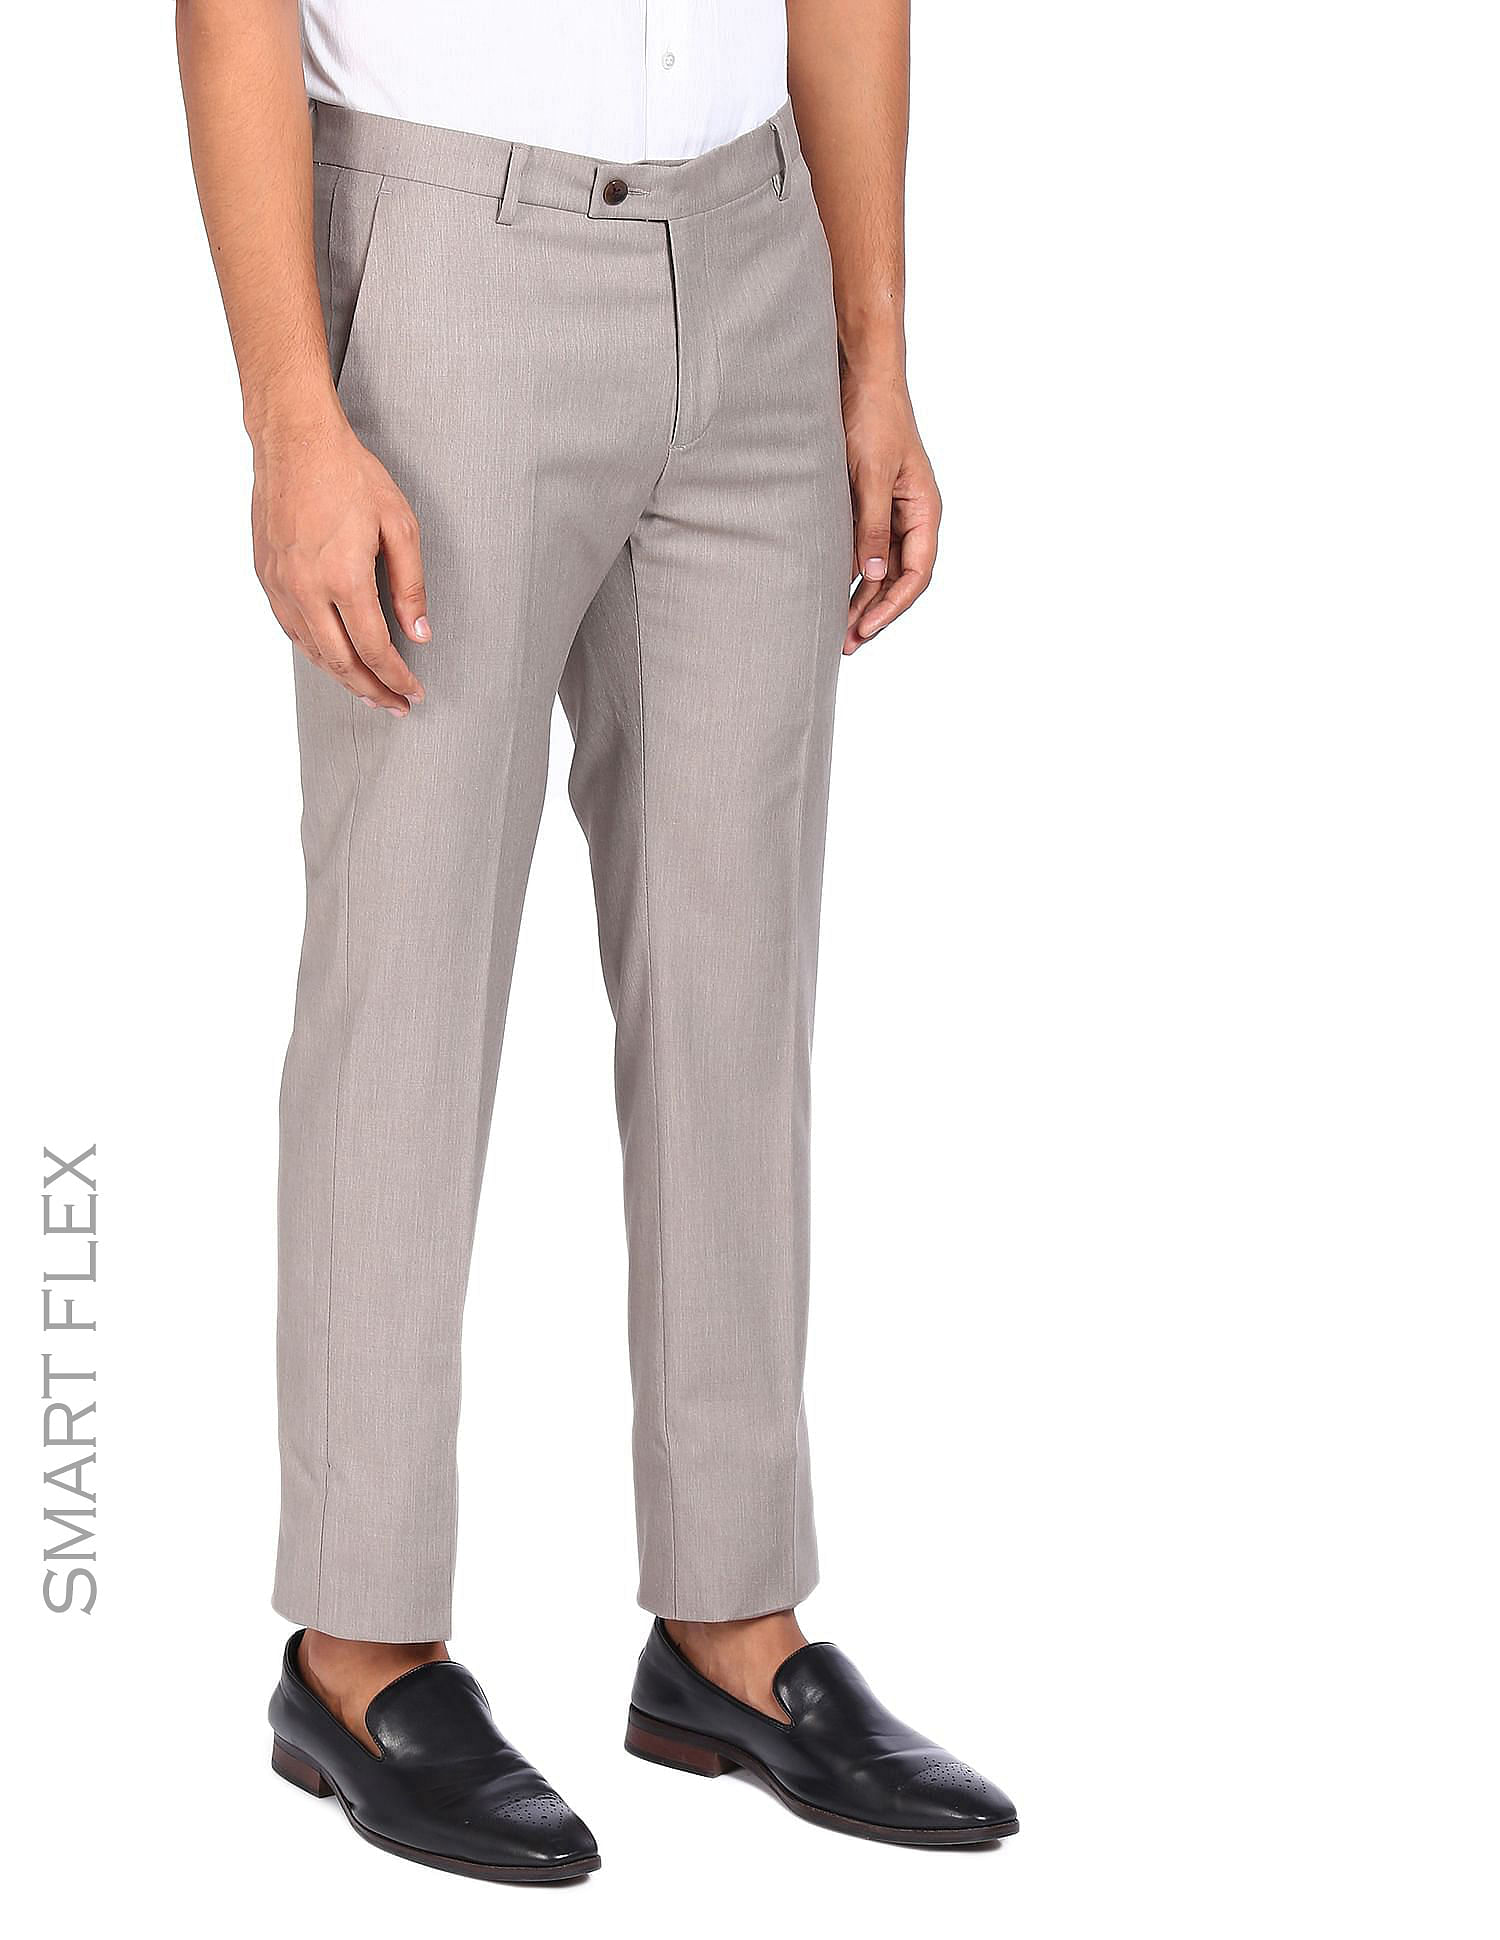 Buy Grey Trousers  Pants for Men by Arrow Sports Online  Ajiocom